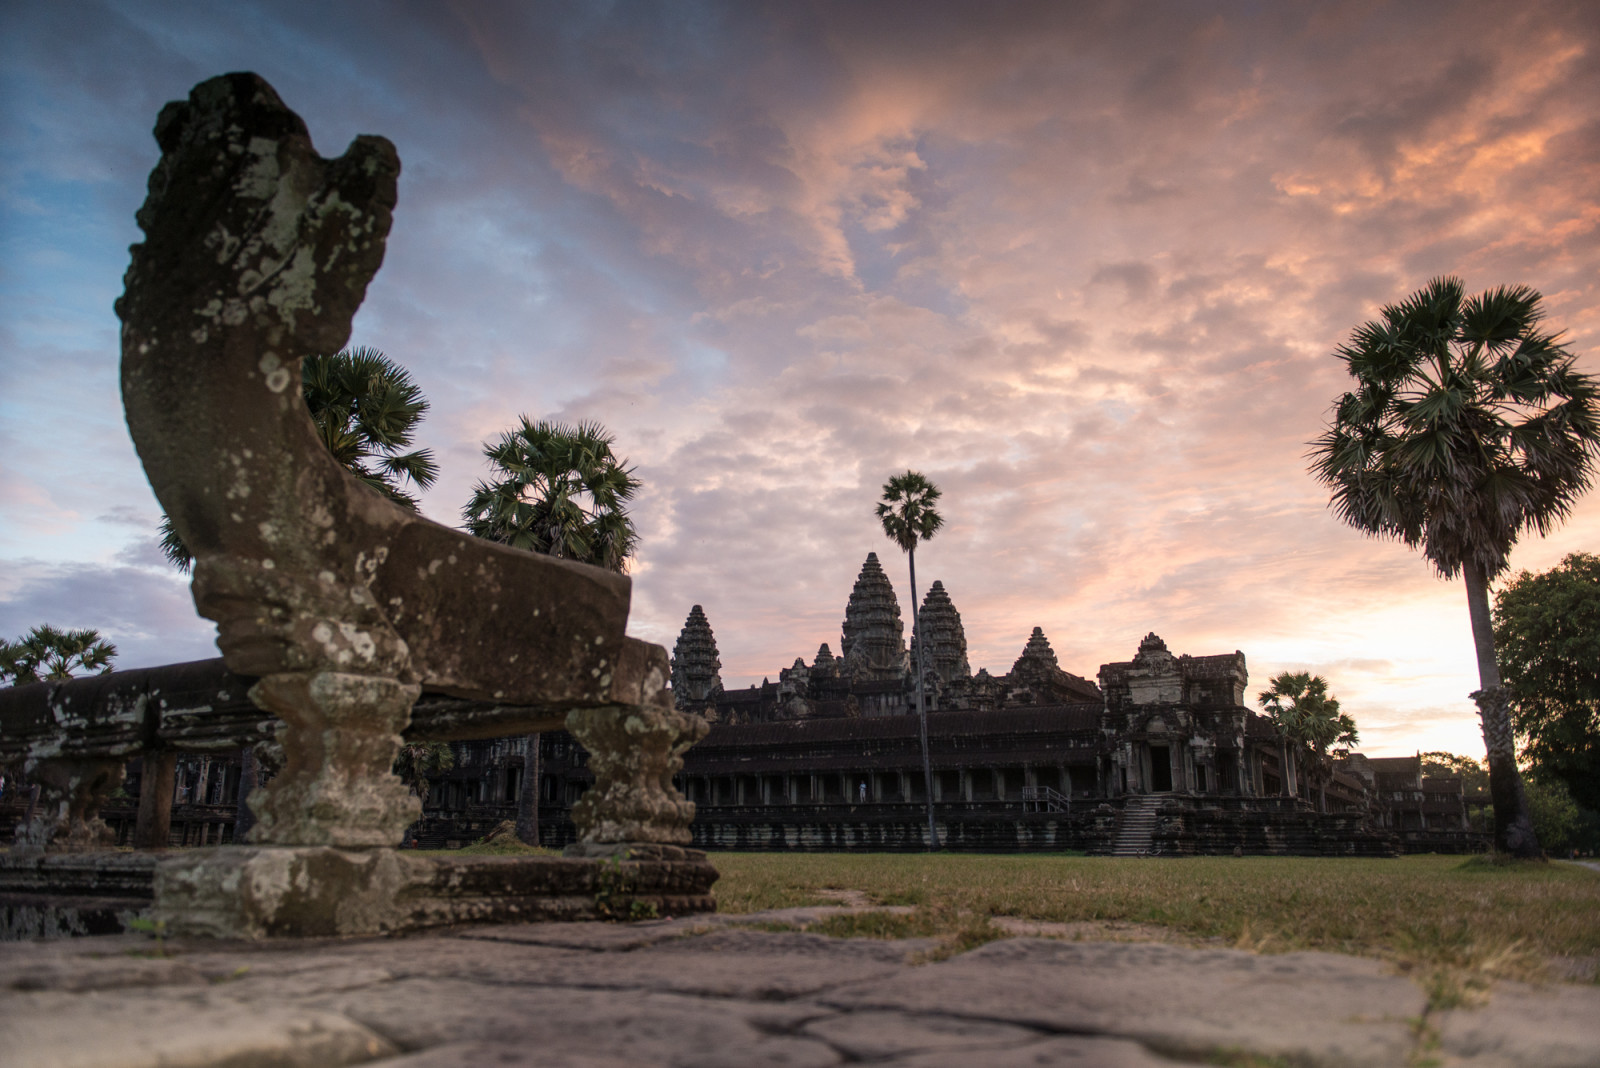 Cambodia photo tours Angkor Wat sunrise